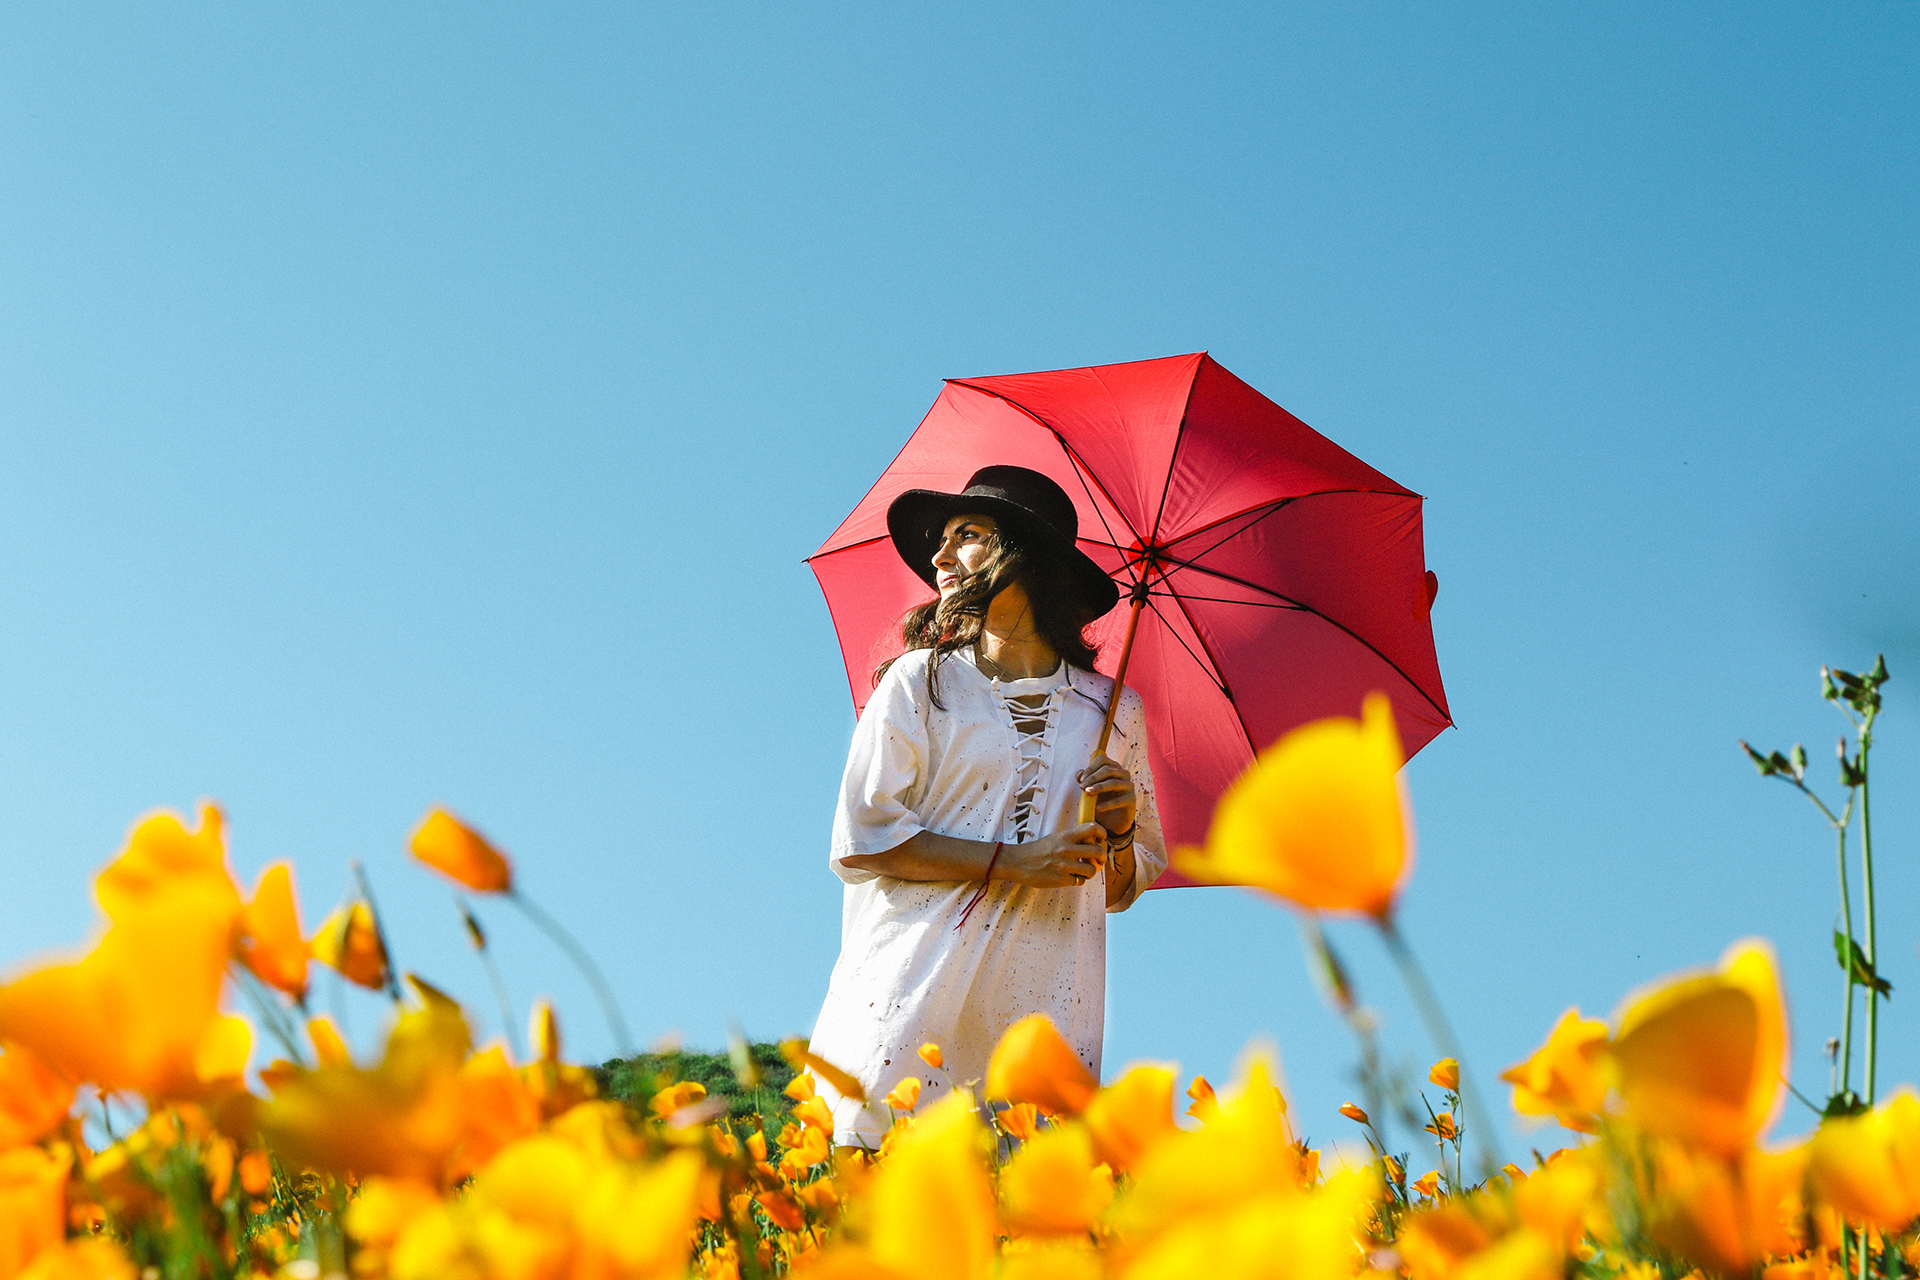 γυναίκα με ομπρέλα σε ένα λιβάδι με τουλίπες και ήλιο έχει δεξιότητες καθημερινής ζωής που σχετίζονται προβλεπτικά με την ψυχική υγεία